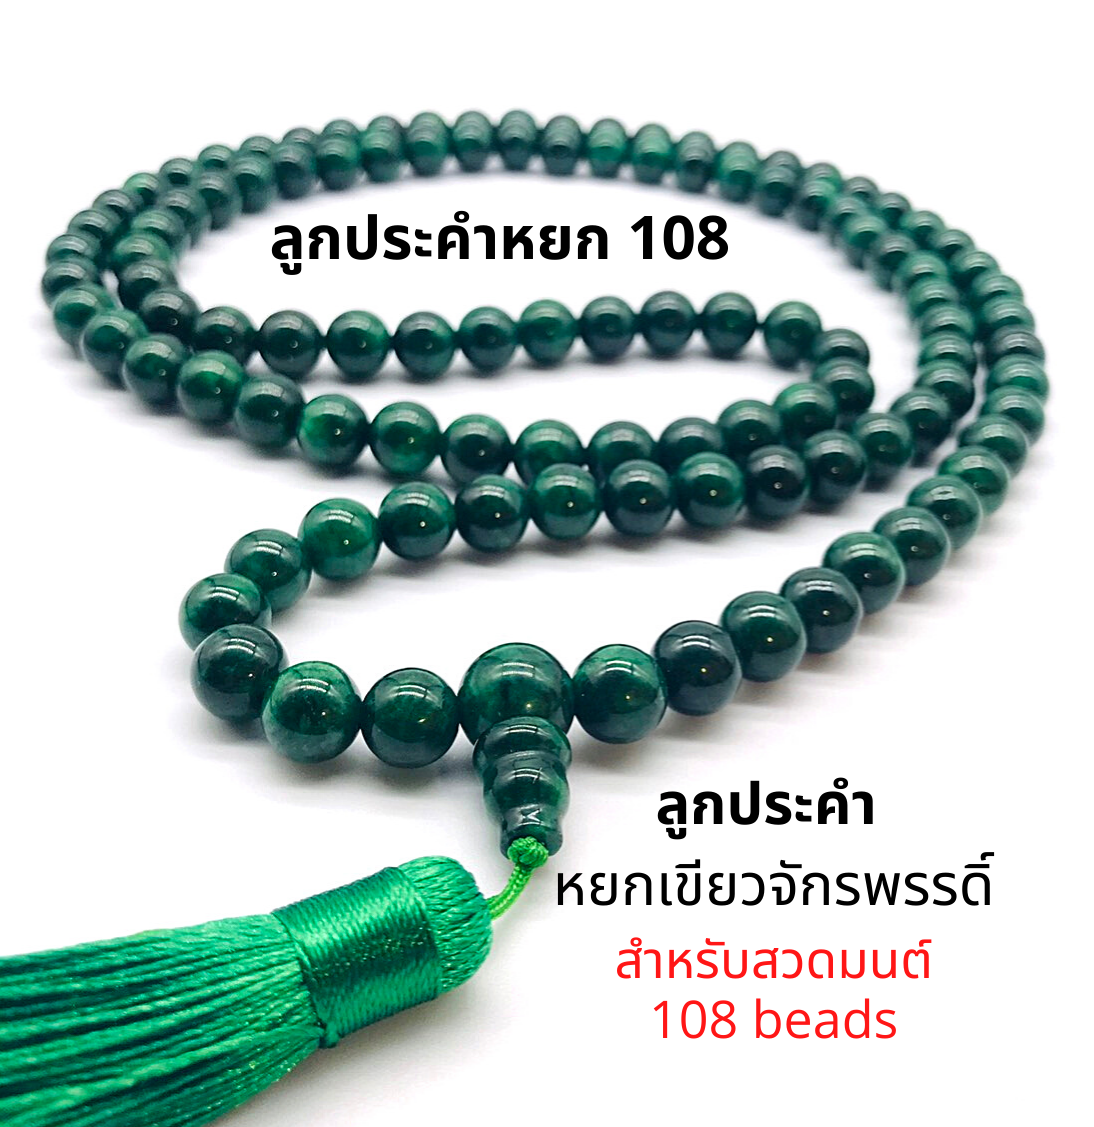 ลูกประคำ สวดมนต์ ประคำสวดมนต์ 108 เม็ด หิน หยก จักรพรรดิ์ ขนาดเม็ด 10 มิล สร้อยประคำสวดมนต์ สำหรับนั่งสมาธิ 108 beads ส่งจากไทย